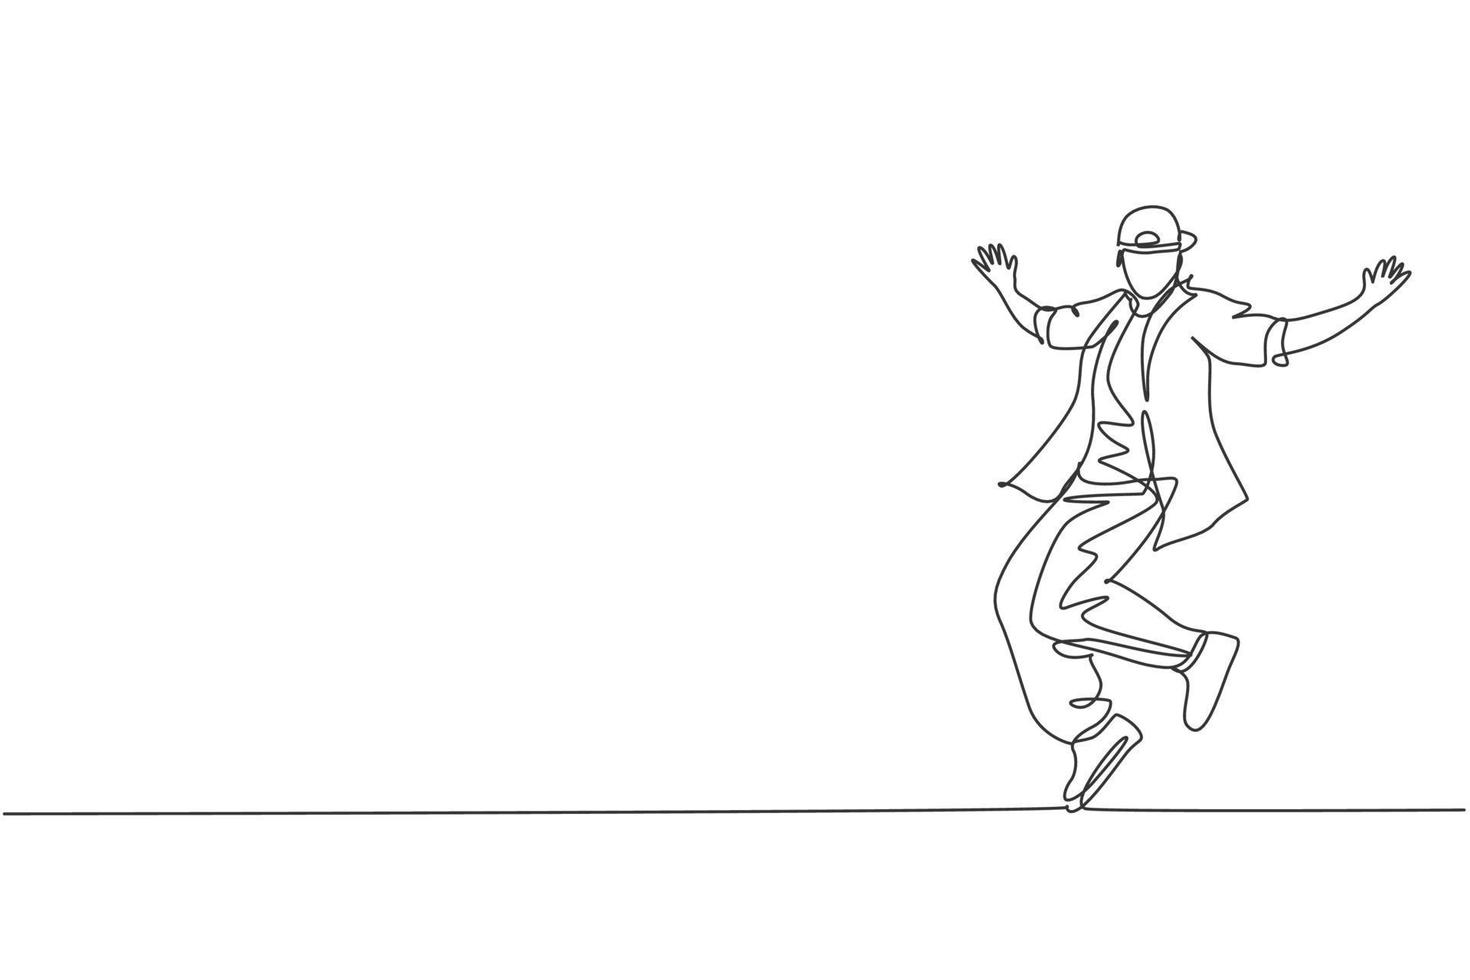 een doorlopende lijntekening van jonge sportieve breakdance-man met casual shirt toont hiphop-dansstijl op straat. stedelijke levensstijl sport concept. dynamische enkele lijn tekenen ontwerp vectorillustratie vector